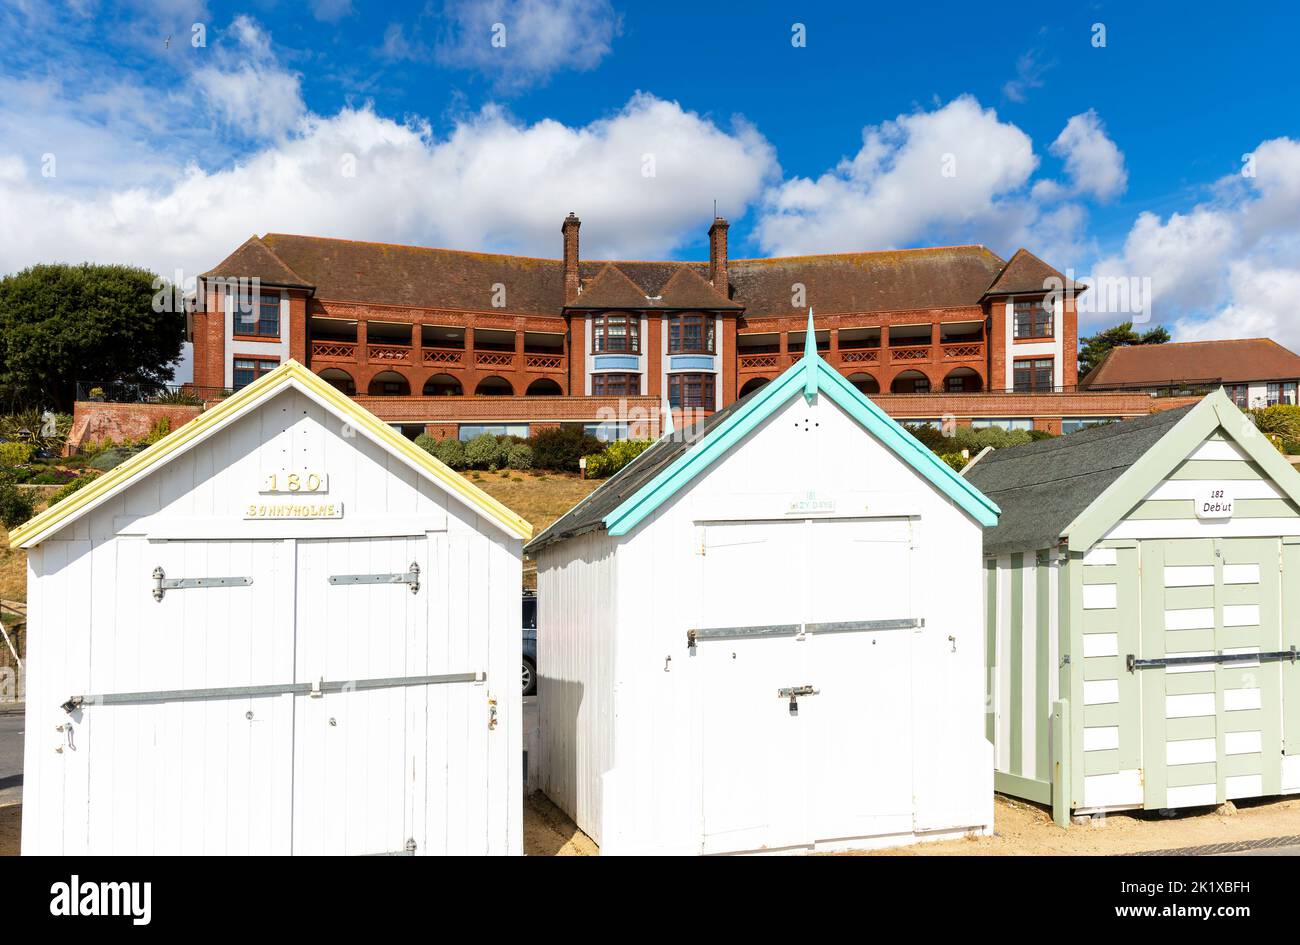 Huttes de plage colorées sur le front de mer, bâtiment de l'hôpital Barlet derrière, Felixstowe, Suffolk, Angleterre, Royaume-Uni Banque D'Images